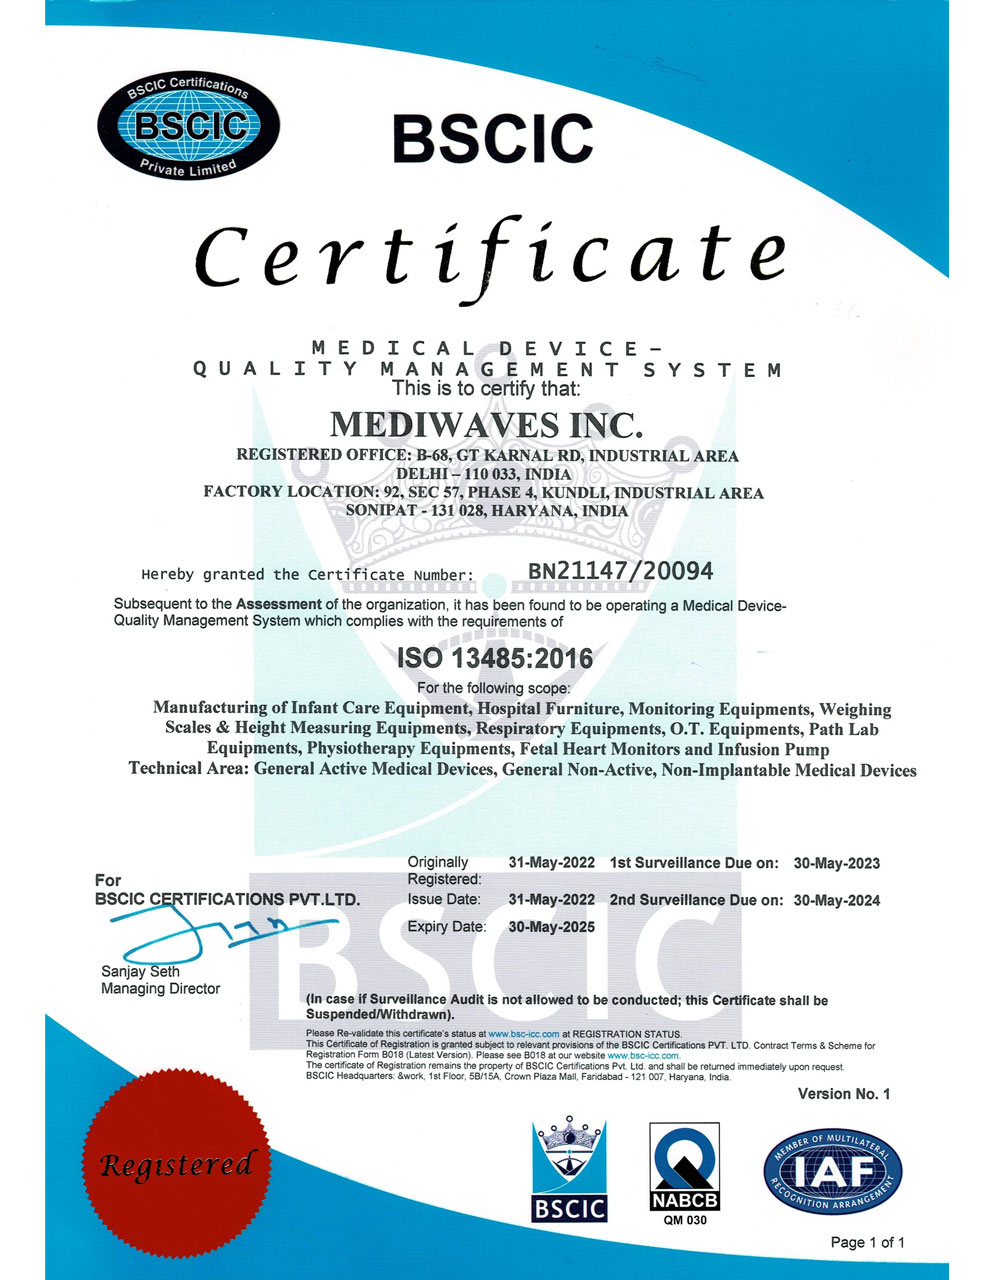 Basic Certificate ISO 13485:2016